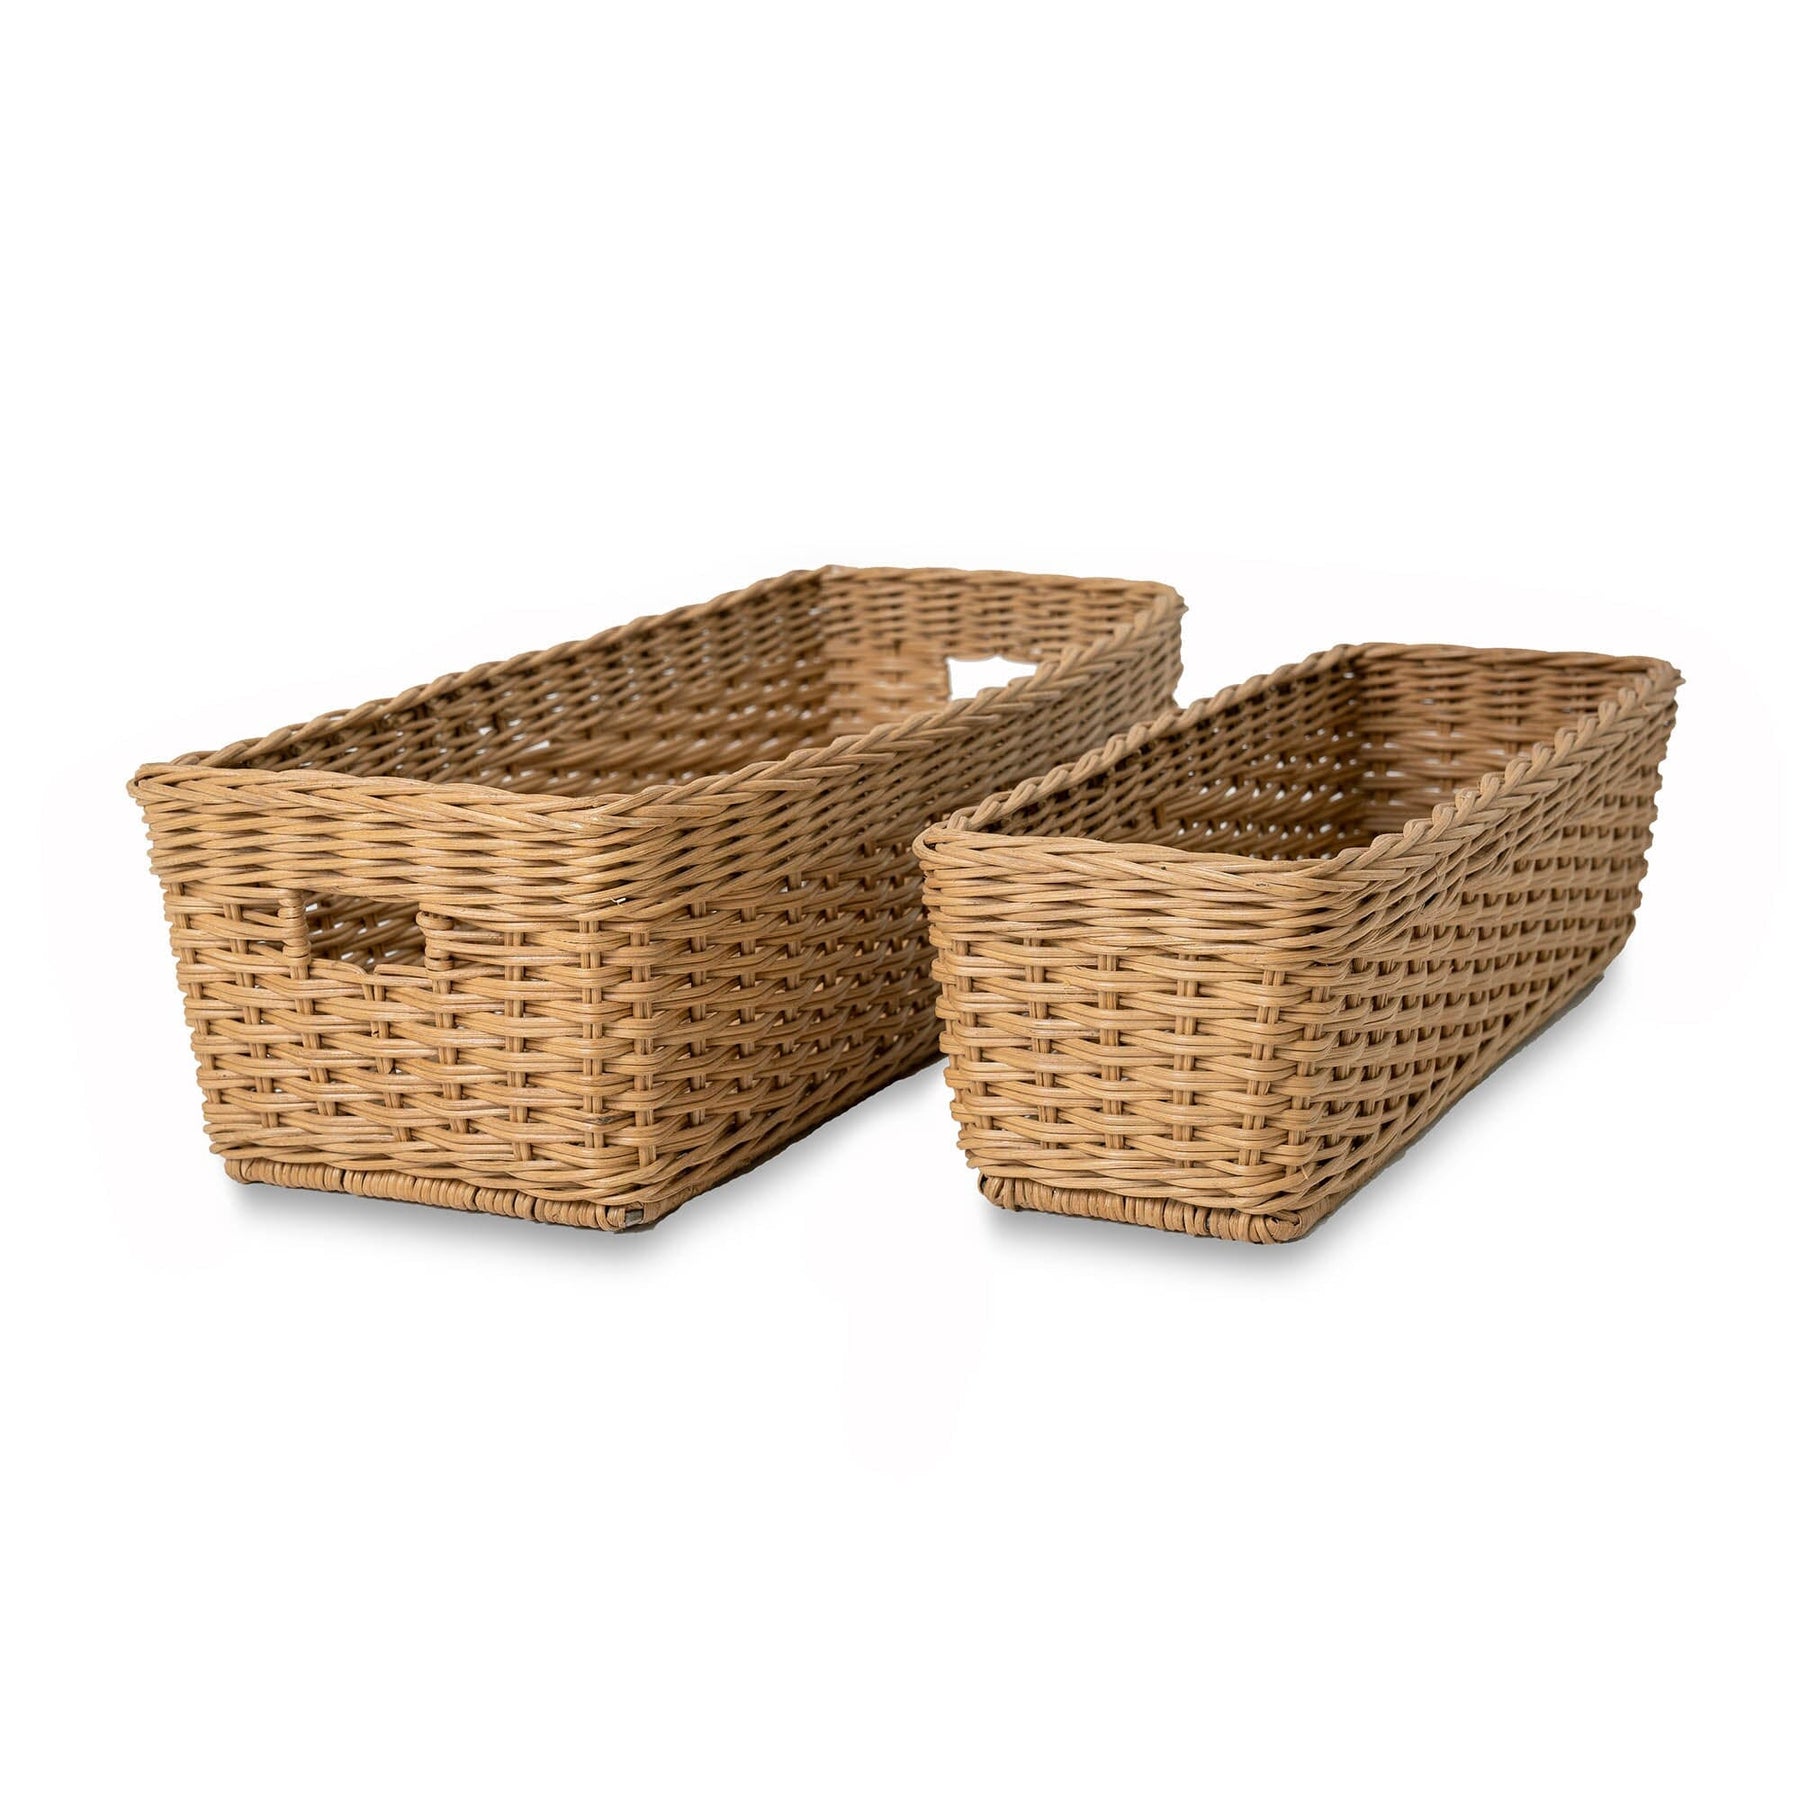 Rectangular Low Wicker Storage Basket - Sandstone - Medium / No Liner